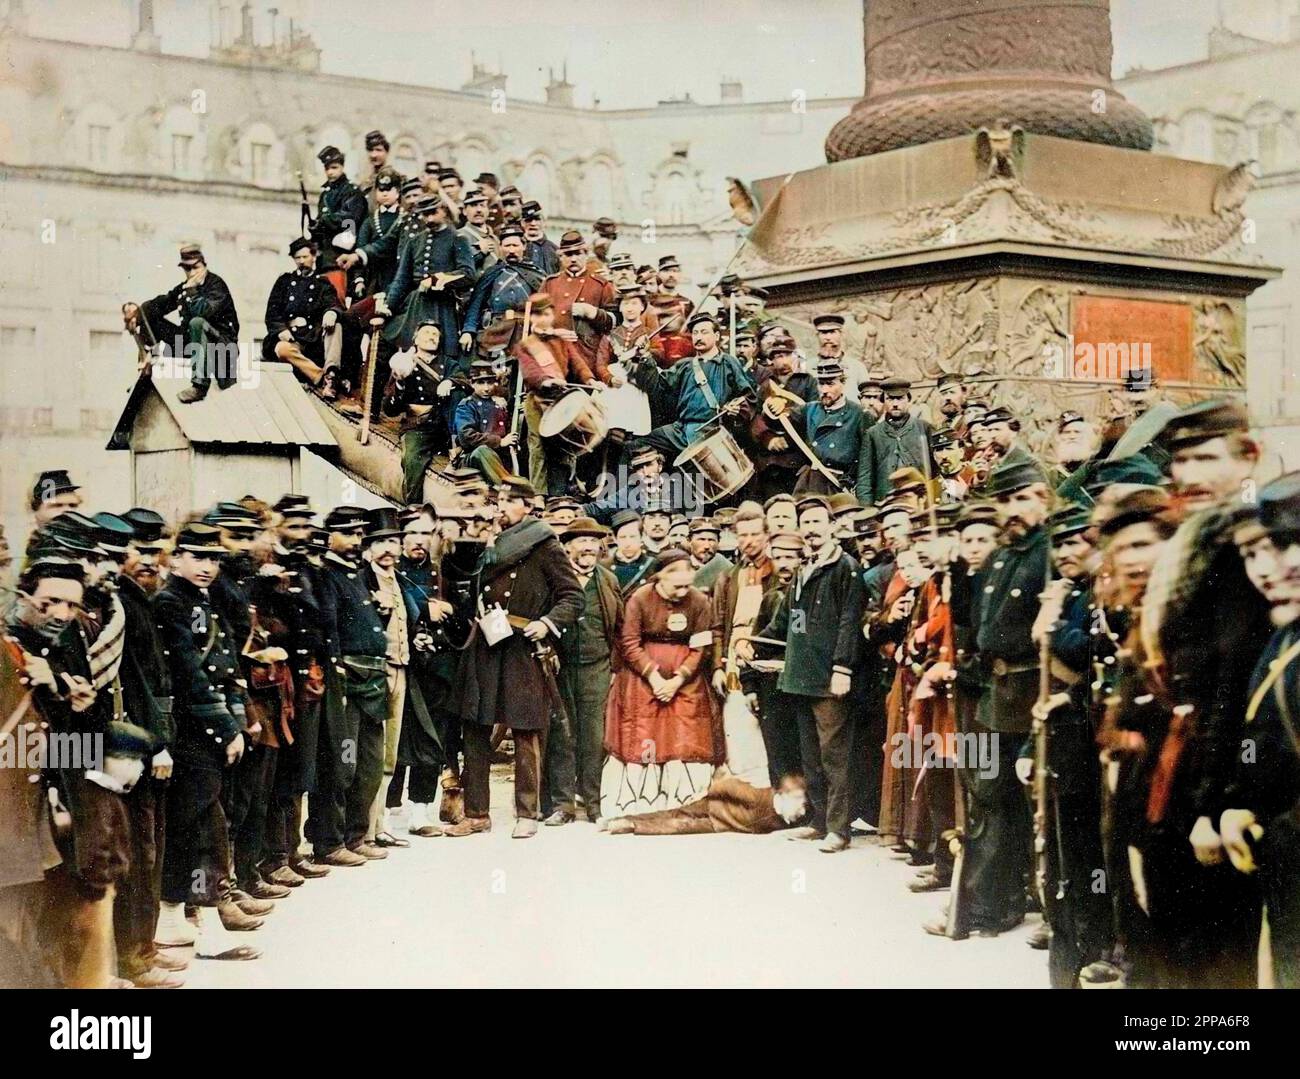 La commune de Paris 1871 - la commune de Paris 1871. Fédération au pied de la colonne Vendôme - photo d'Auguste Bruno Braquehais Banque D'Images